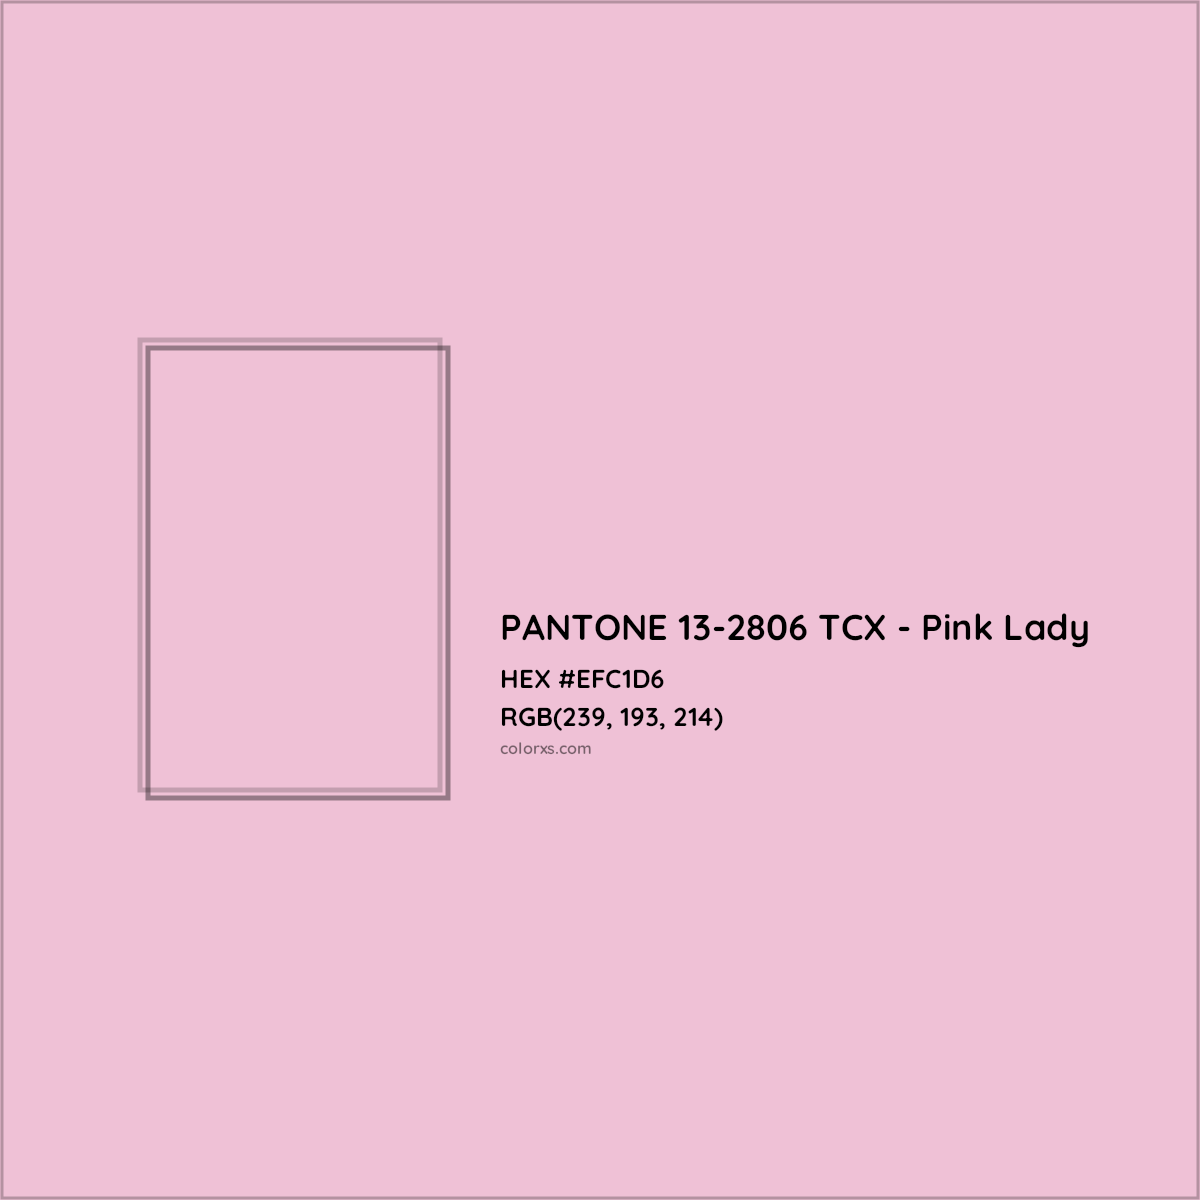 HEX #EFC1D6 PANTONE 13-2806 TCX - Pink Lady CMS Pantone TCX - Color Code